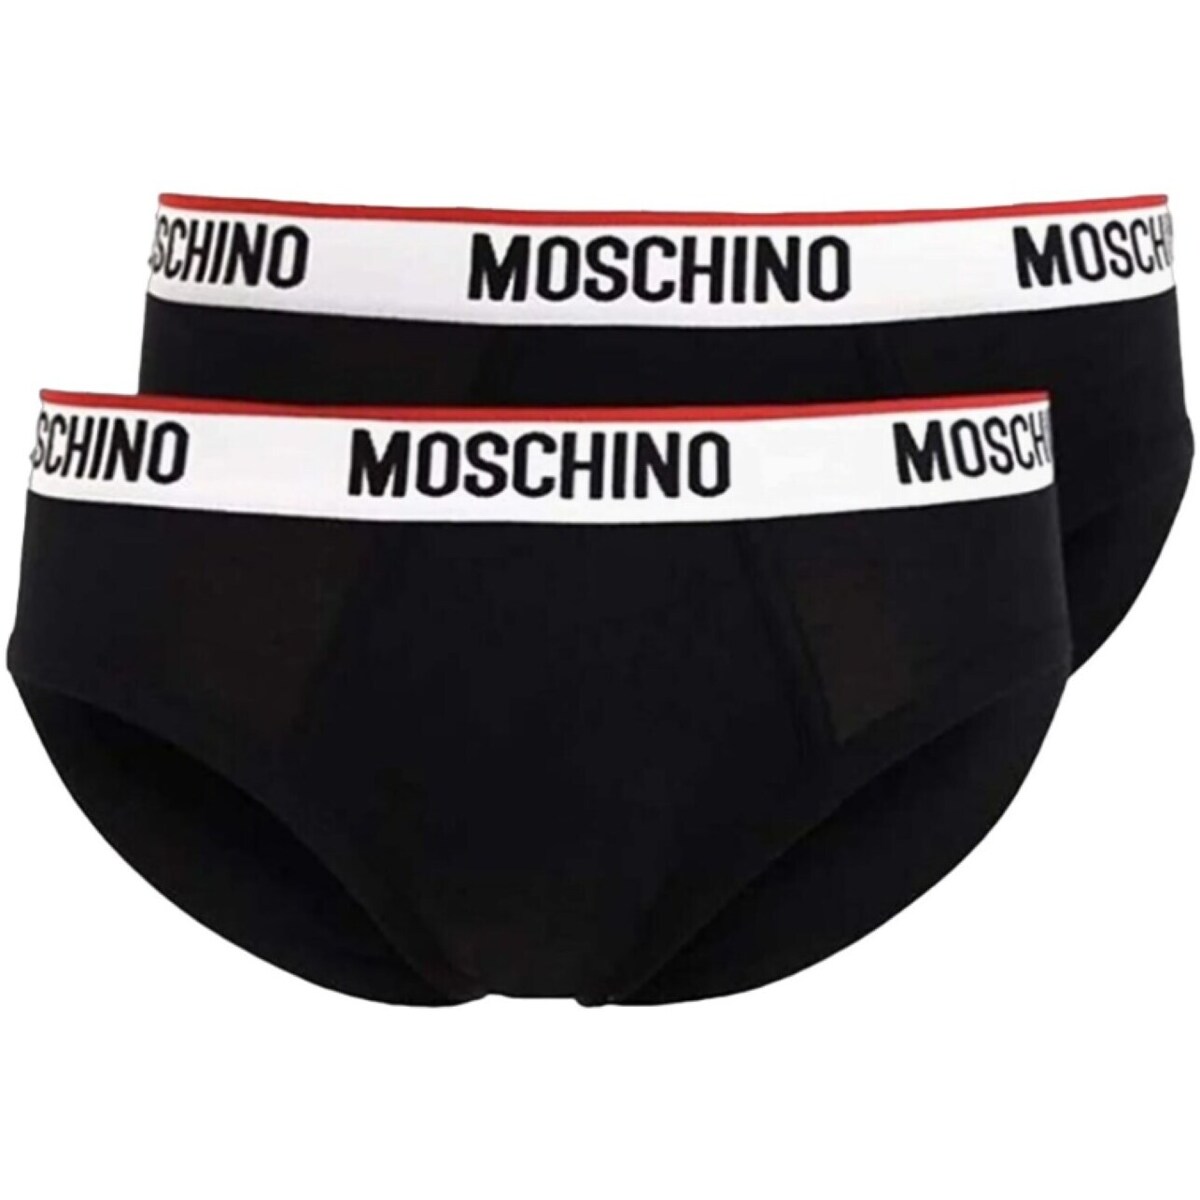 Moschino  Slips Moschino 1392-4300